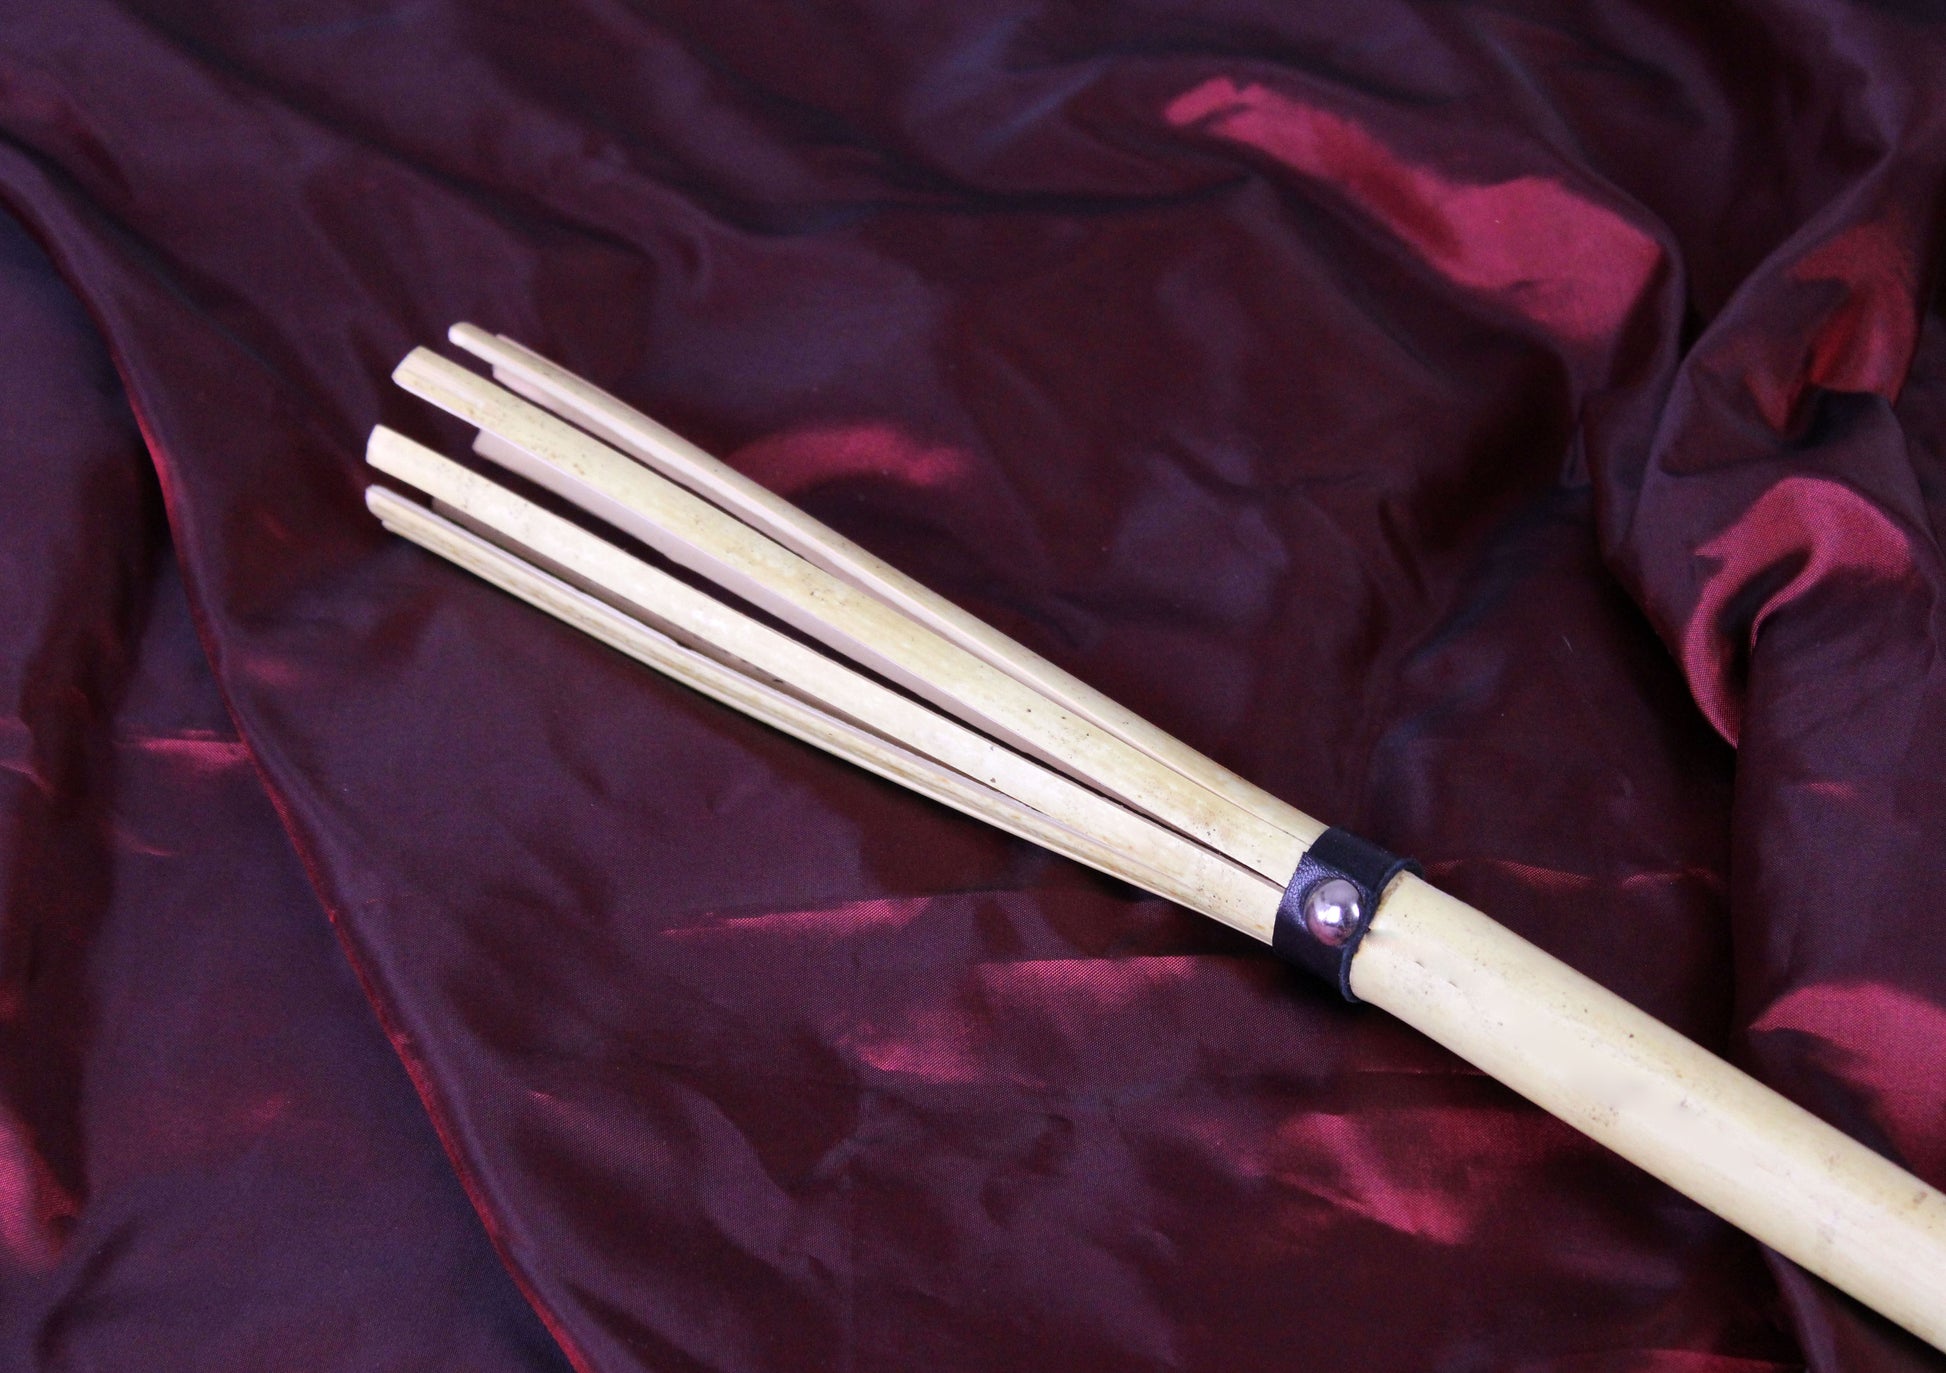 Détail de la canne bdsm en bambou, fendu en plusieurs tiges, associées par une lanière de cuir